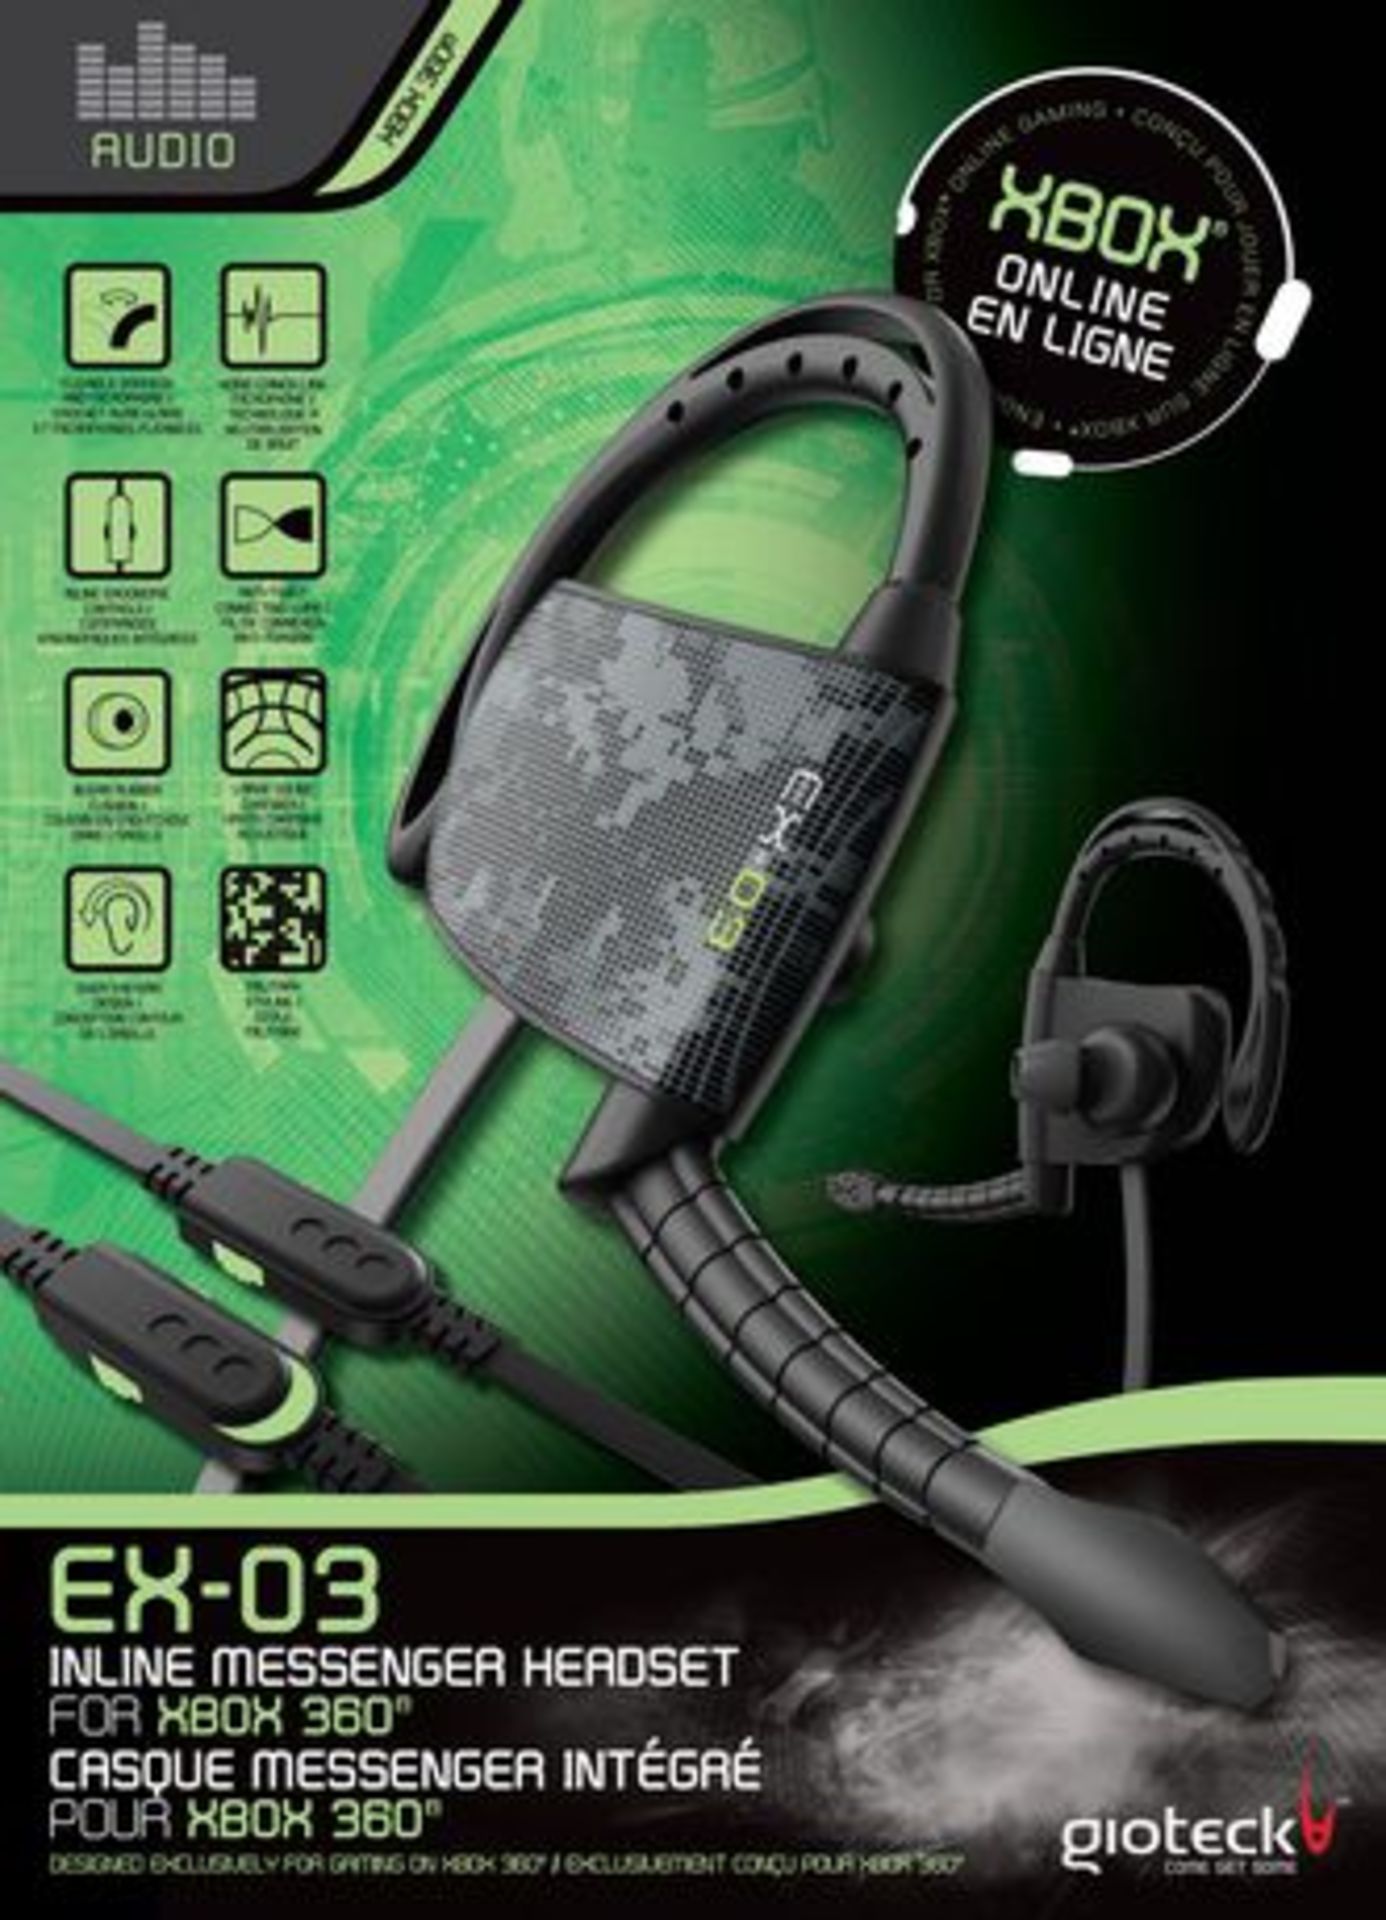 V Brand New Gioteck Ex-03 Online Messenger Headset For Xbox 360